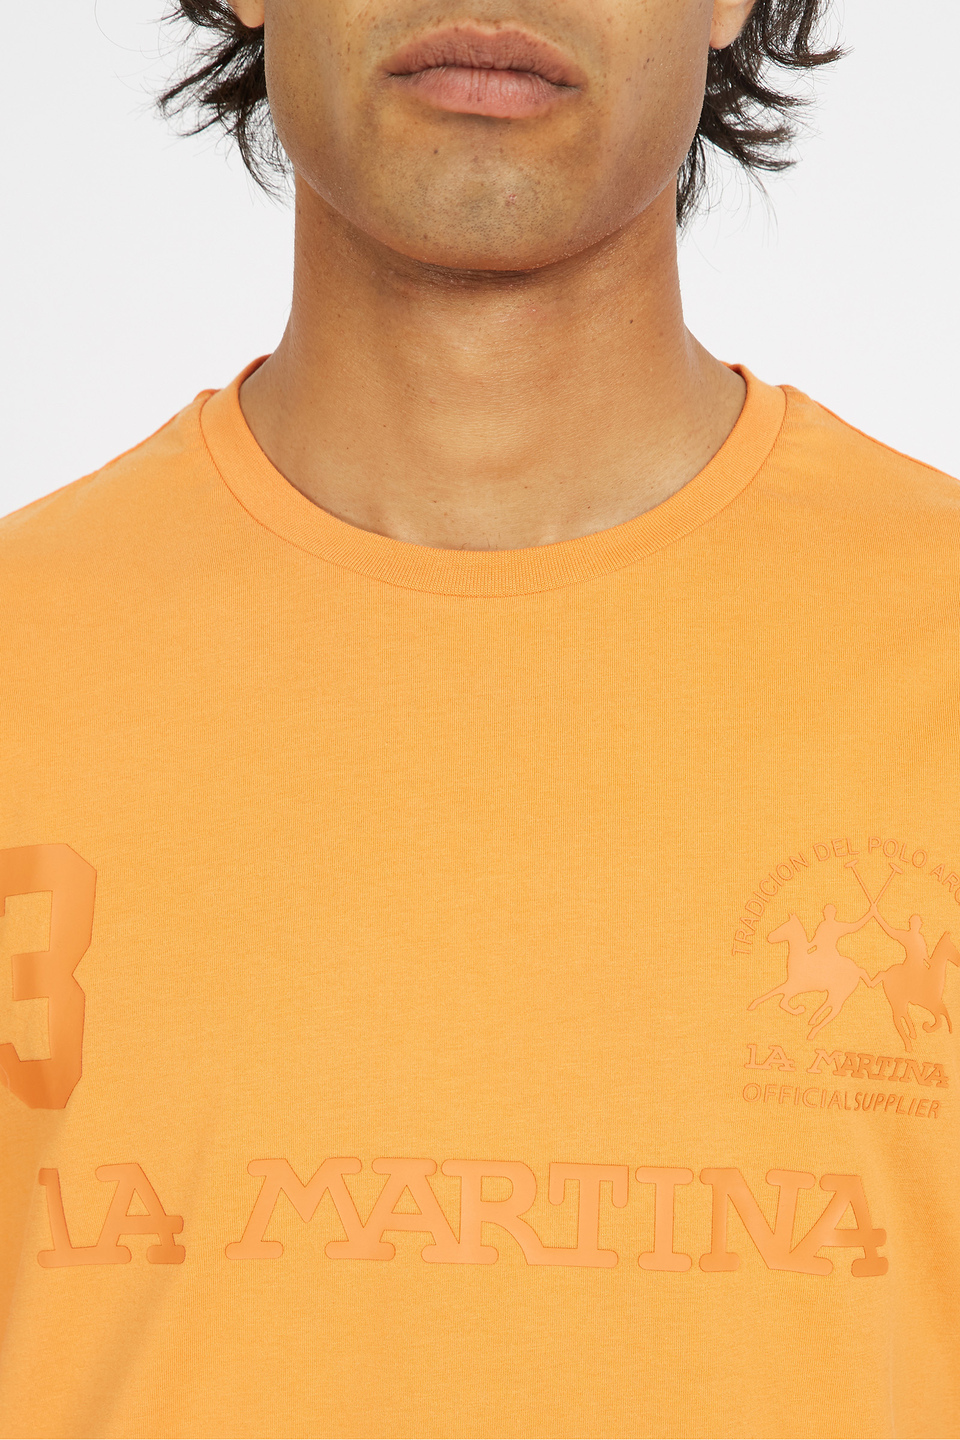 Herren-T-Shirt aus 100 % Baumwolle mit normaler Passform und kurzen Ärmeln - Viktor | La Martina - Official Online Shop